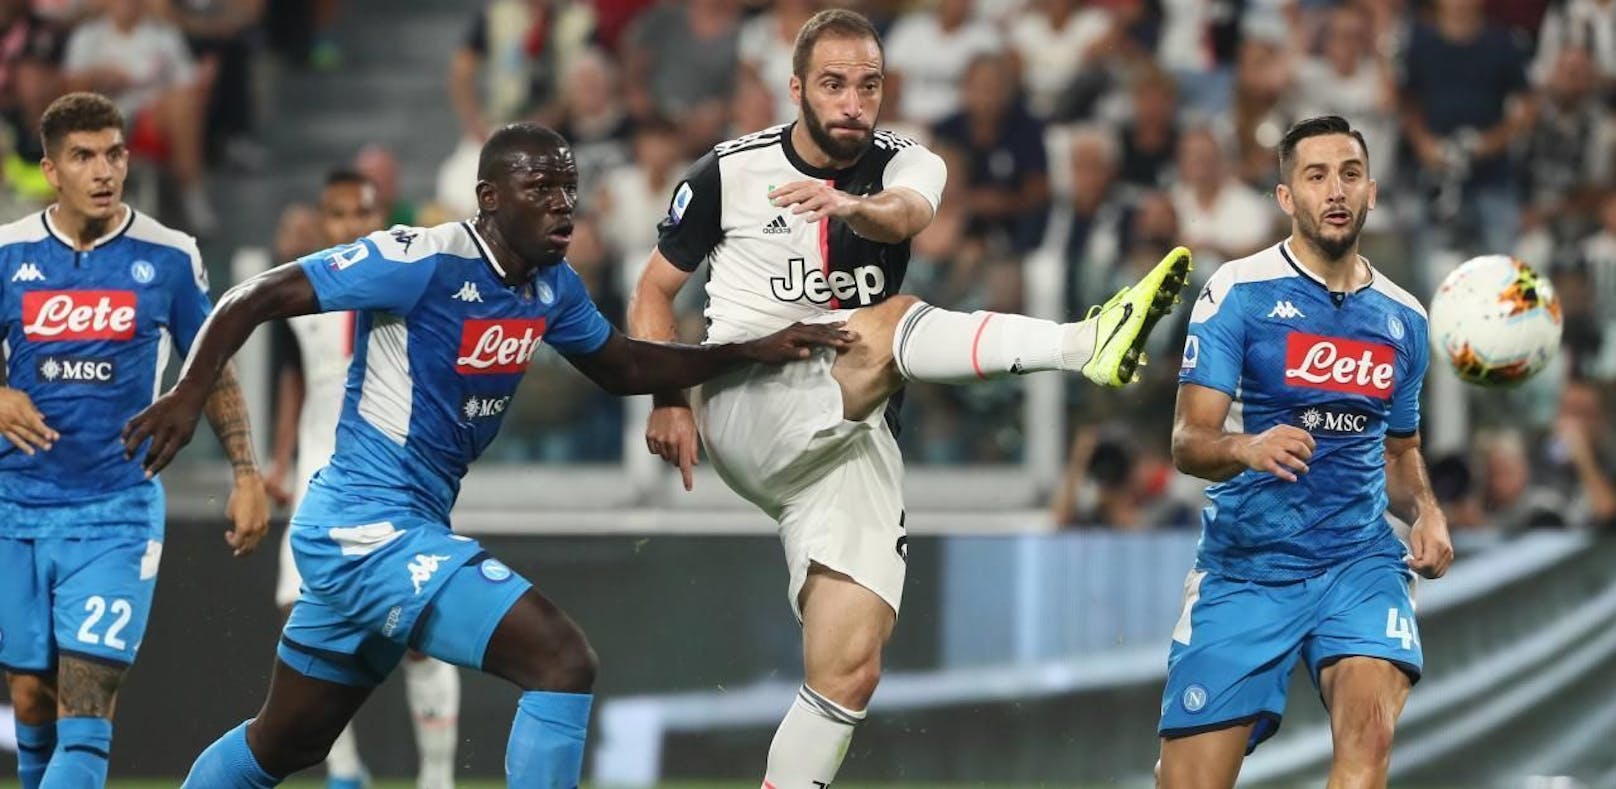 Juve besiegt Napoli in einem dramatischen Spitzenspiel.